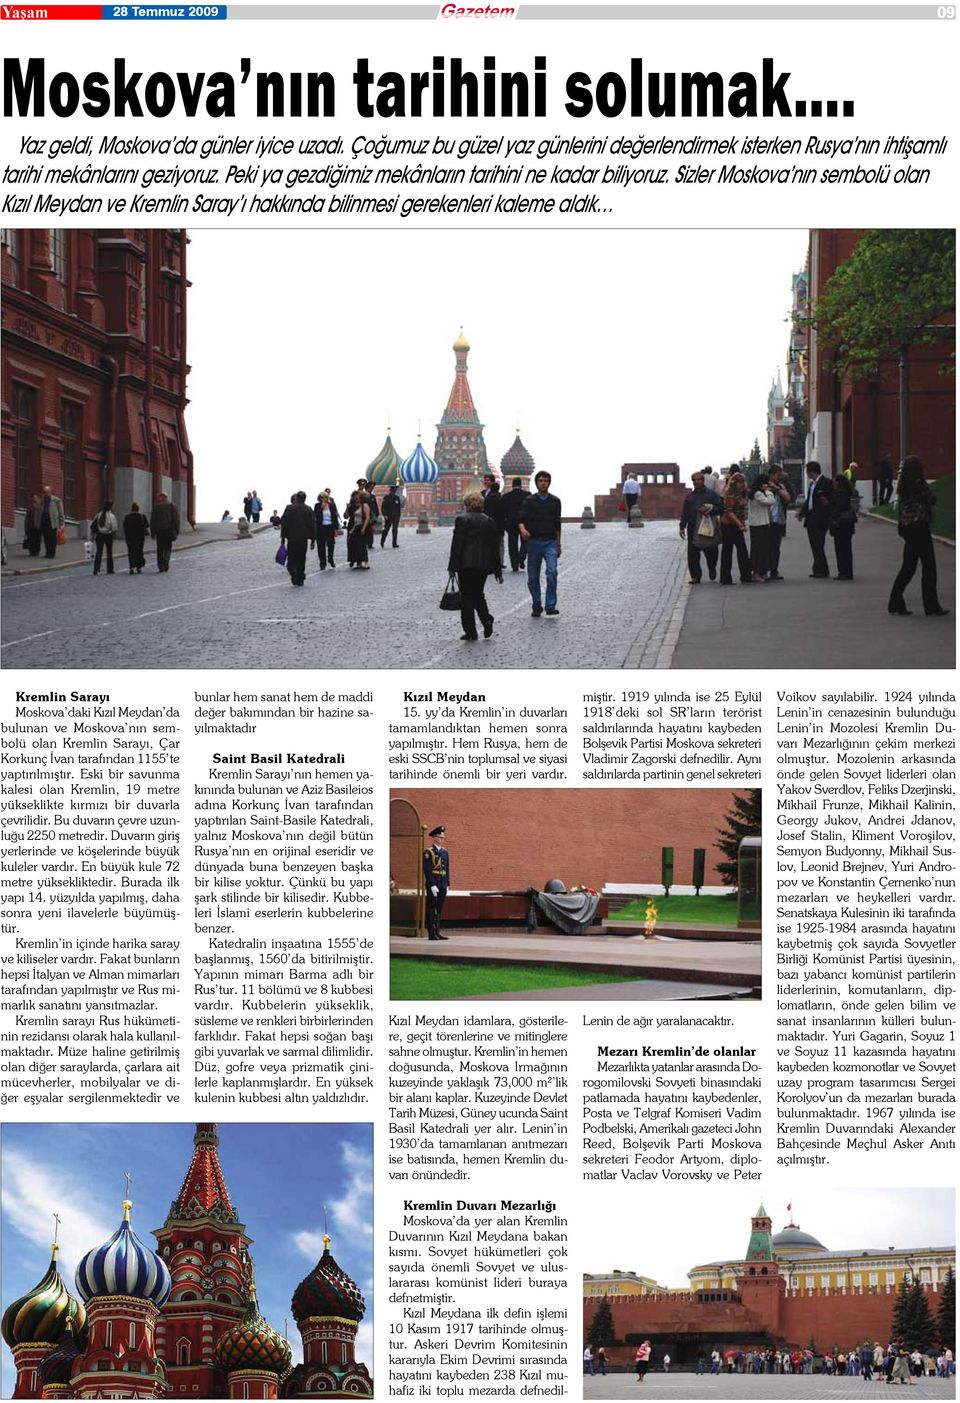 Sizler Moskova nın sembolü olan Kızıl Meydan ve Kremlin Saray ı hakkında bilinmesi gerekenleri kaleme aldık Kremlin Sarayı Moskova daki Kızıl Meydan da bulunan ve Moskova nın sembolü olan Kremlin